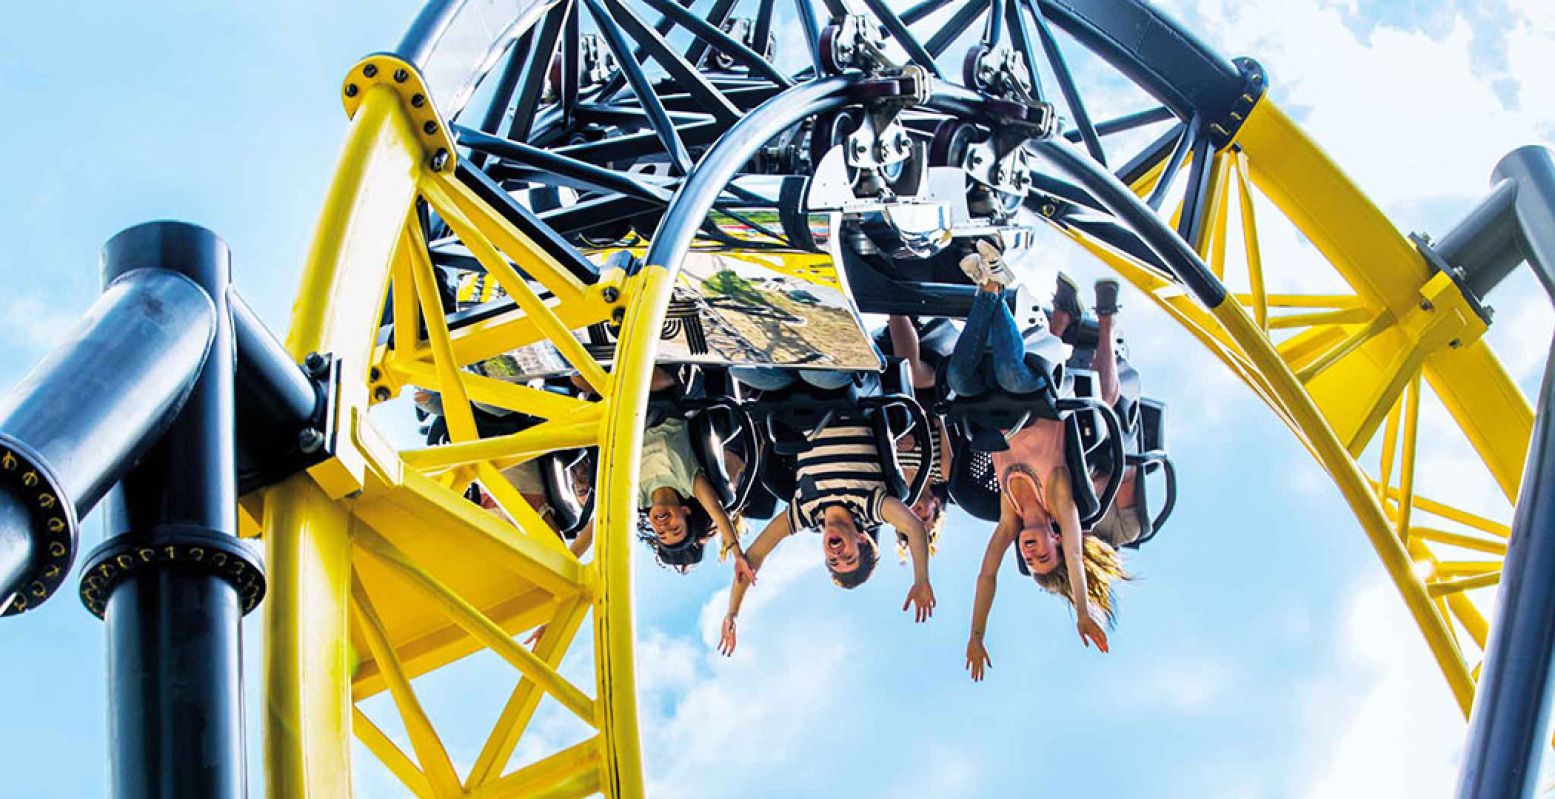 Gillen van plezier in een achtbaan van Walibi. Lees alles over de attractieparken in Nederland. Foto: Walibi Holland